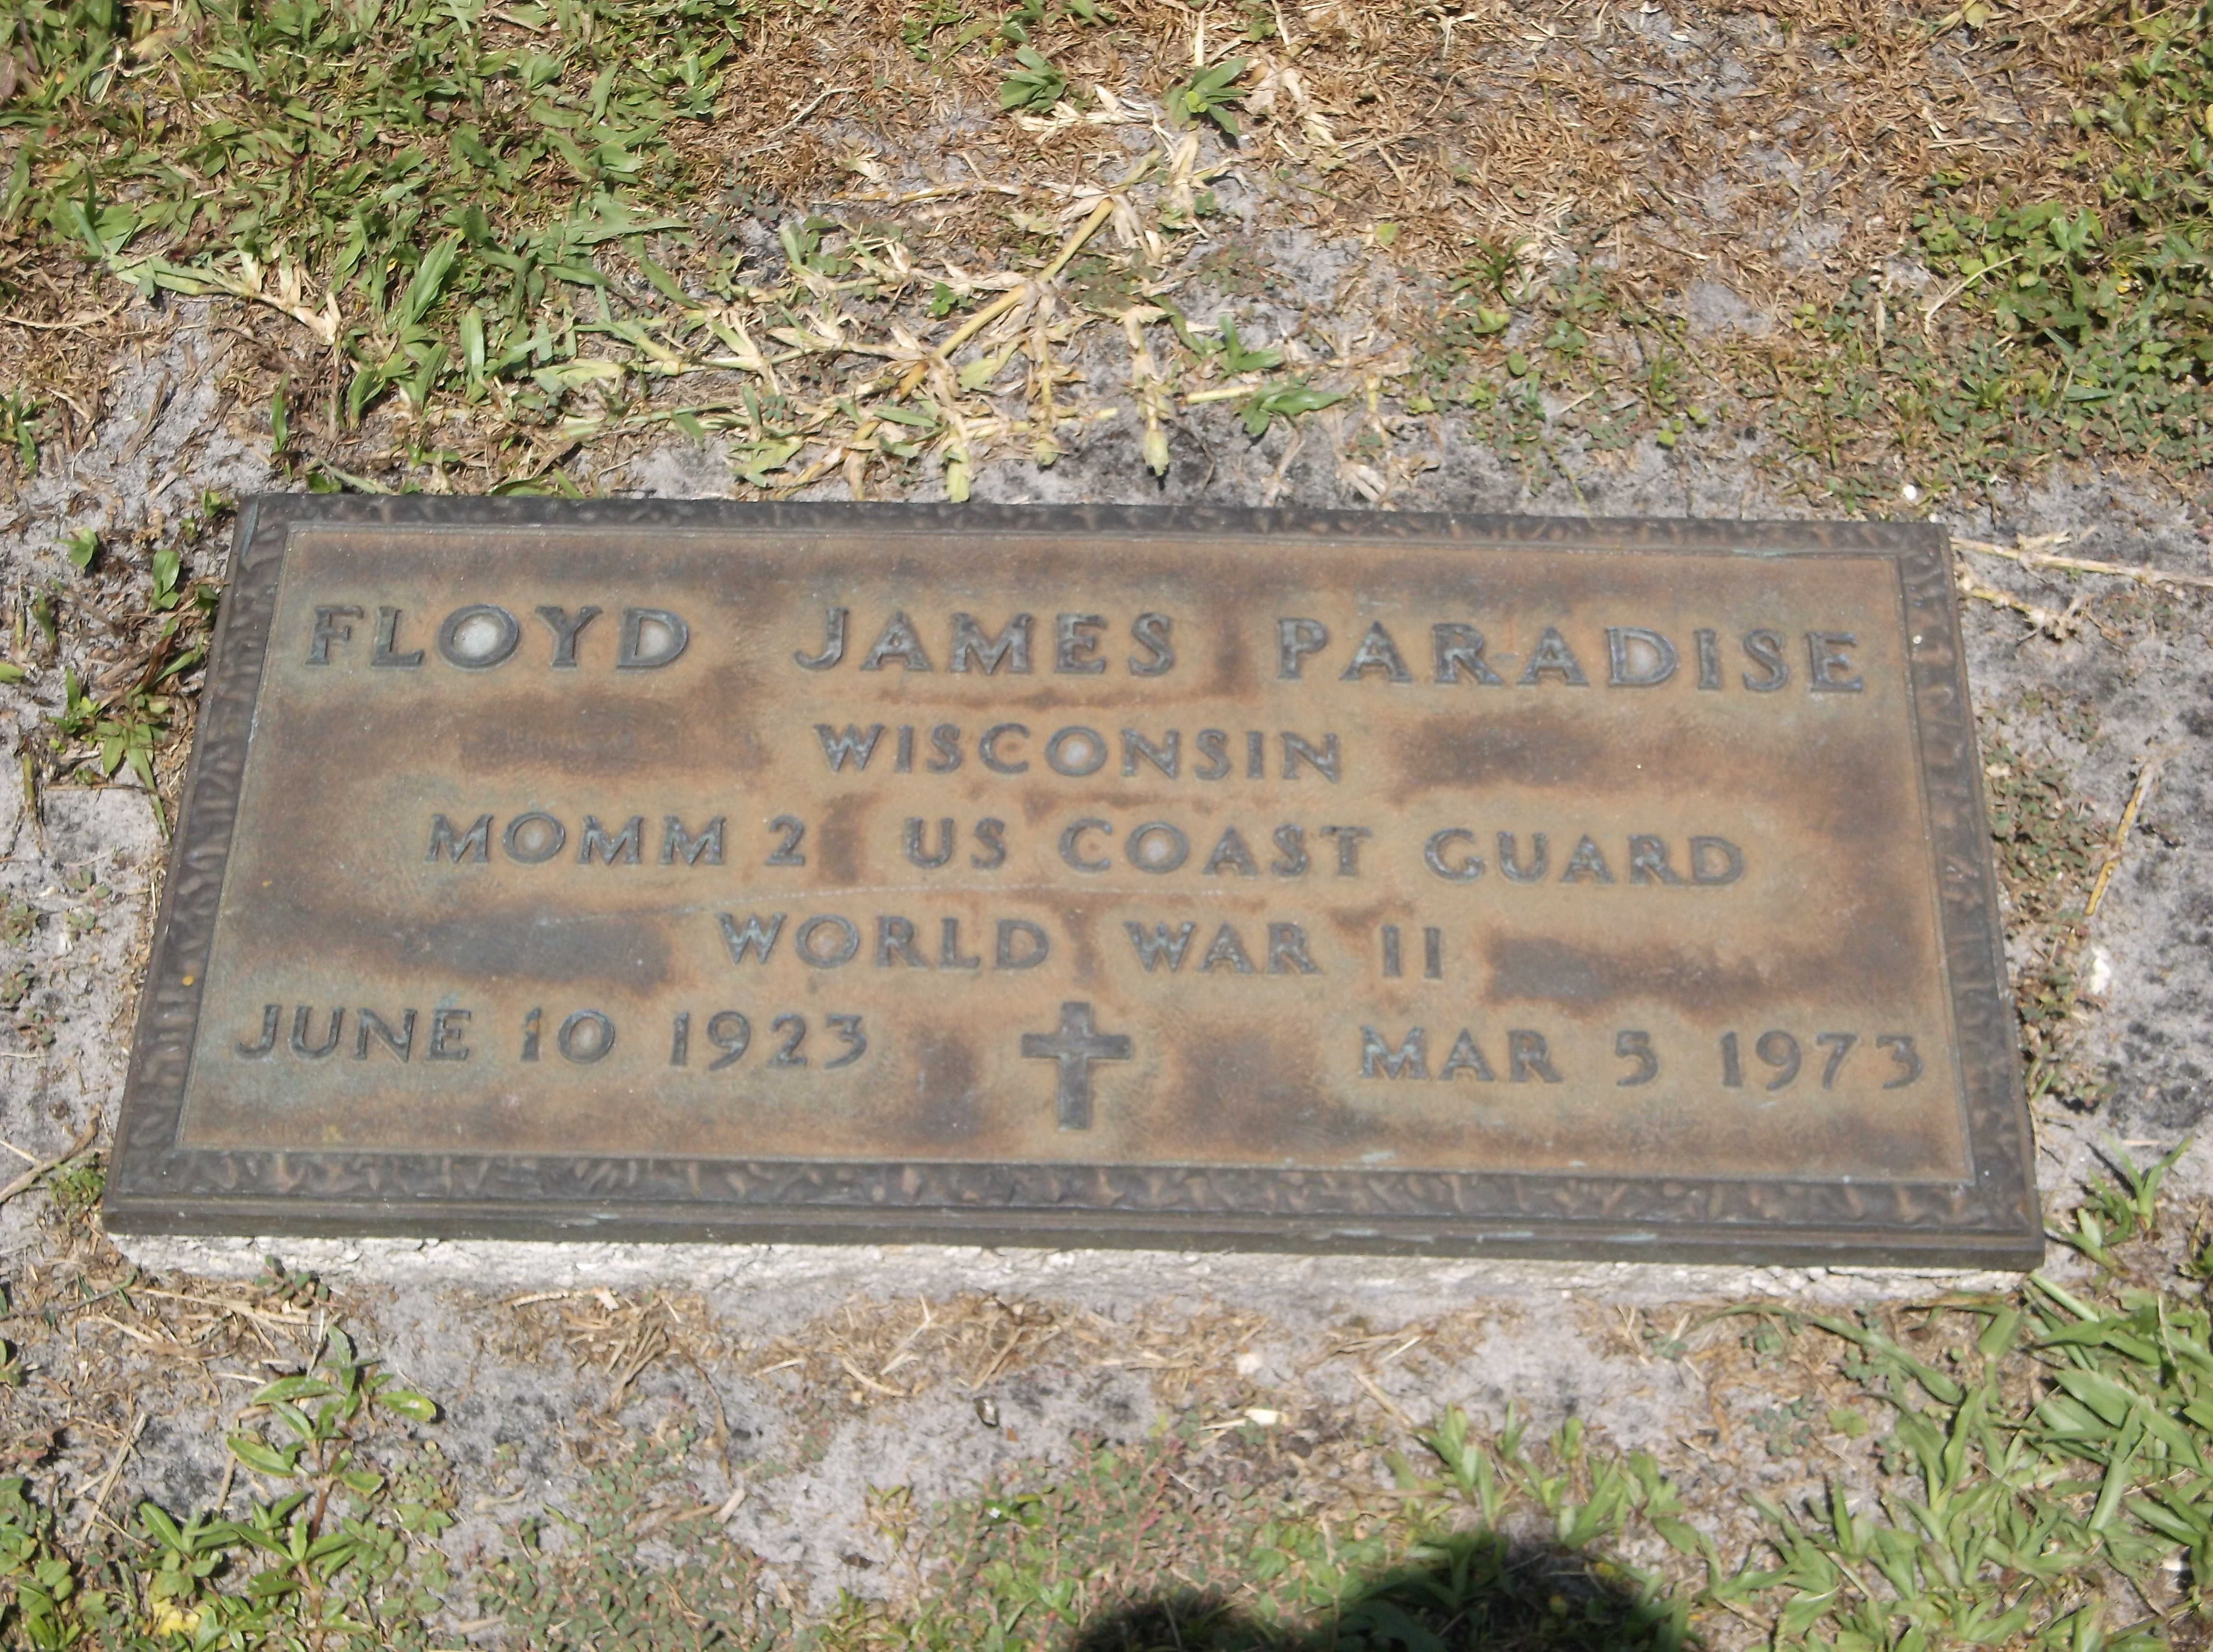 Floyd James Paradise